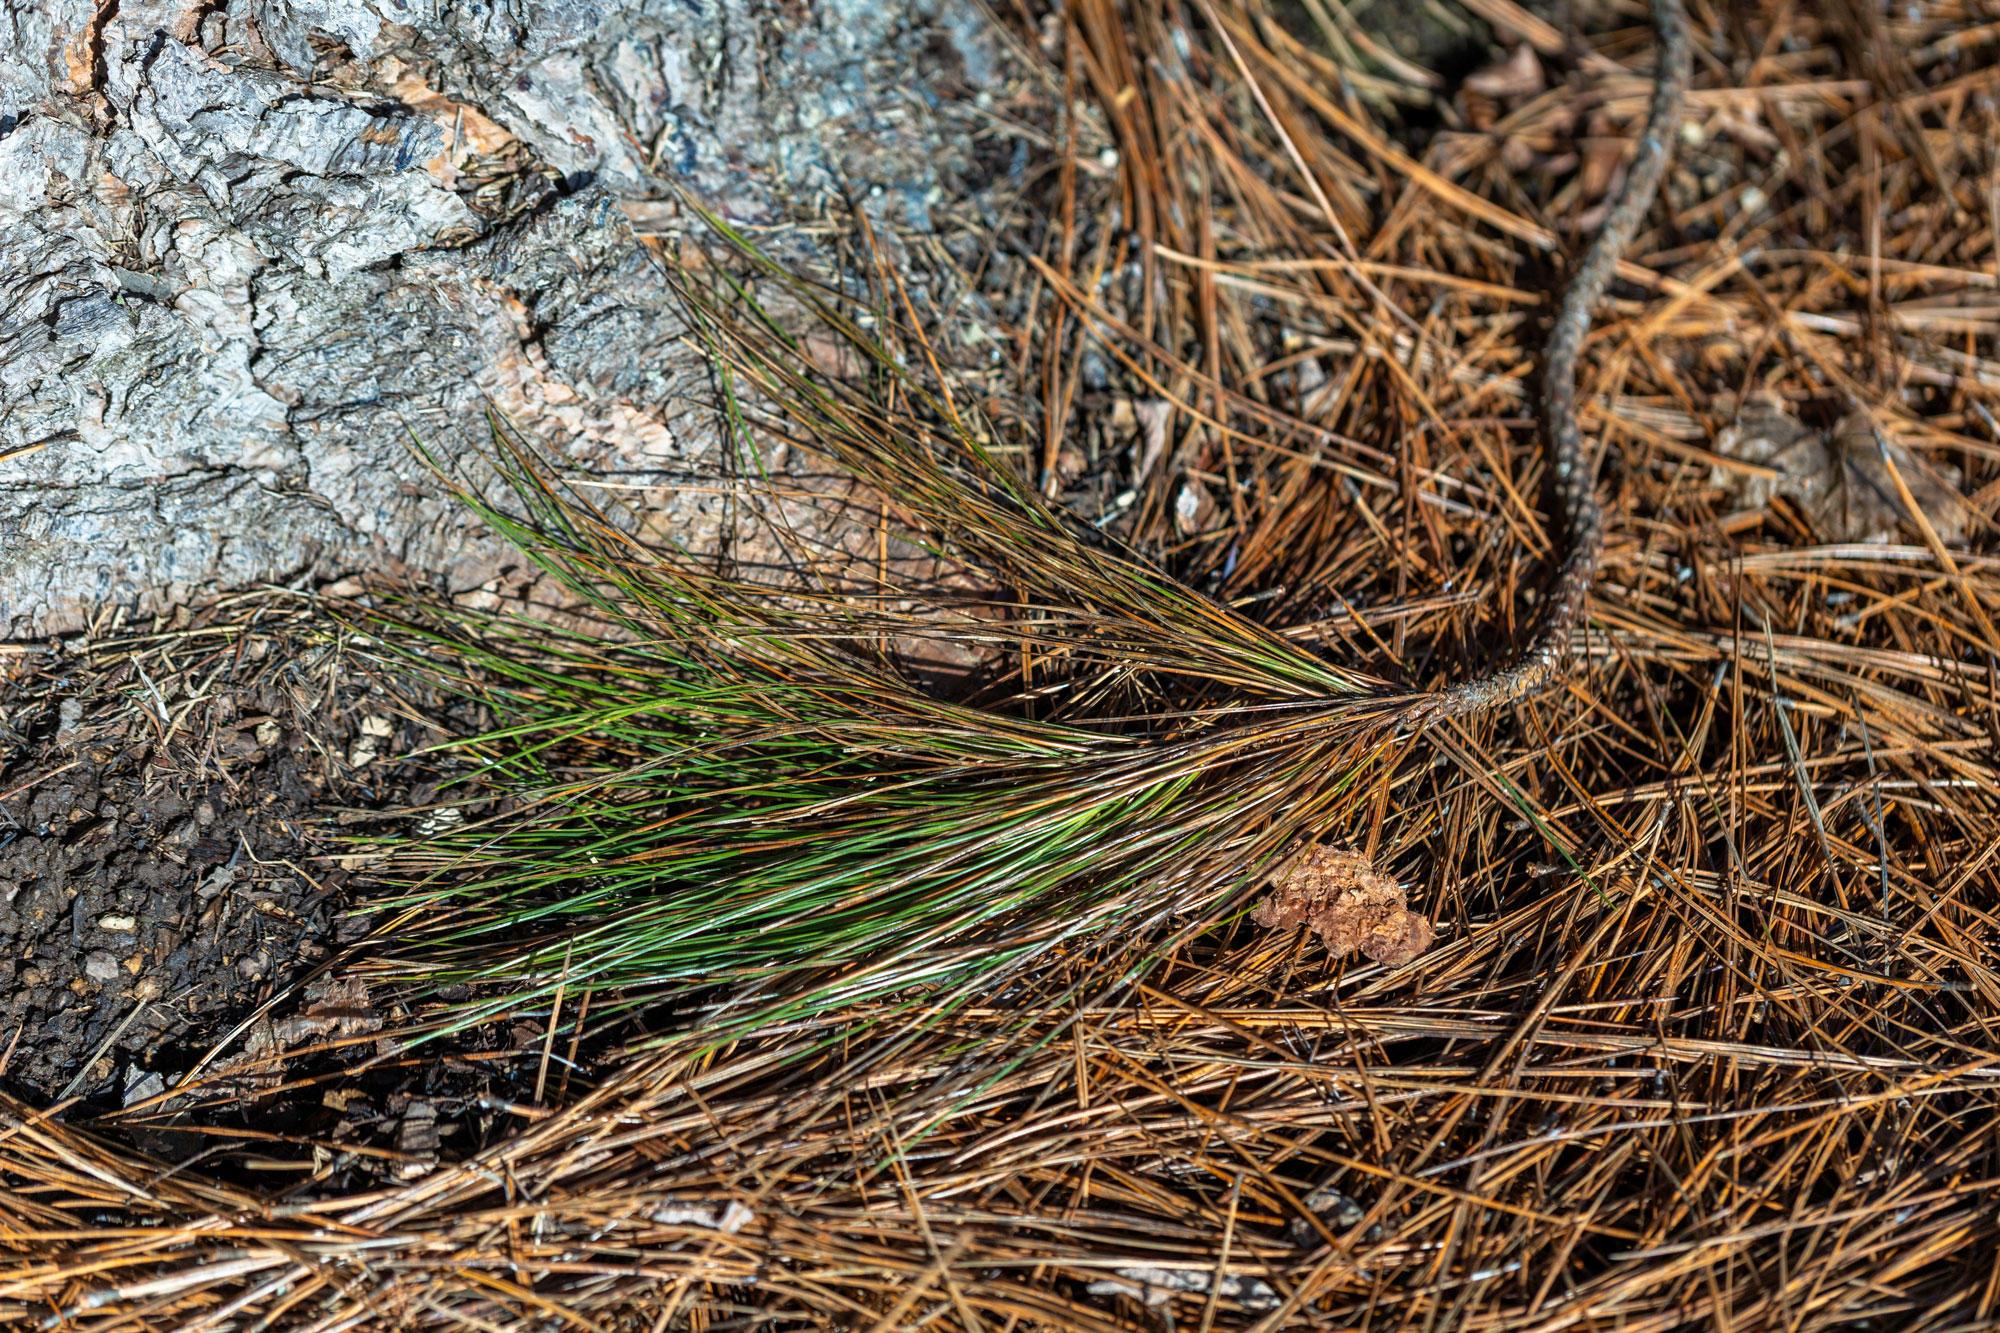 Ponderosa pine needles don't make soil more acidic.